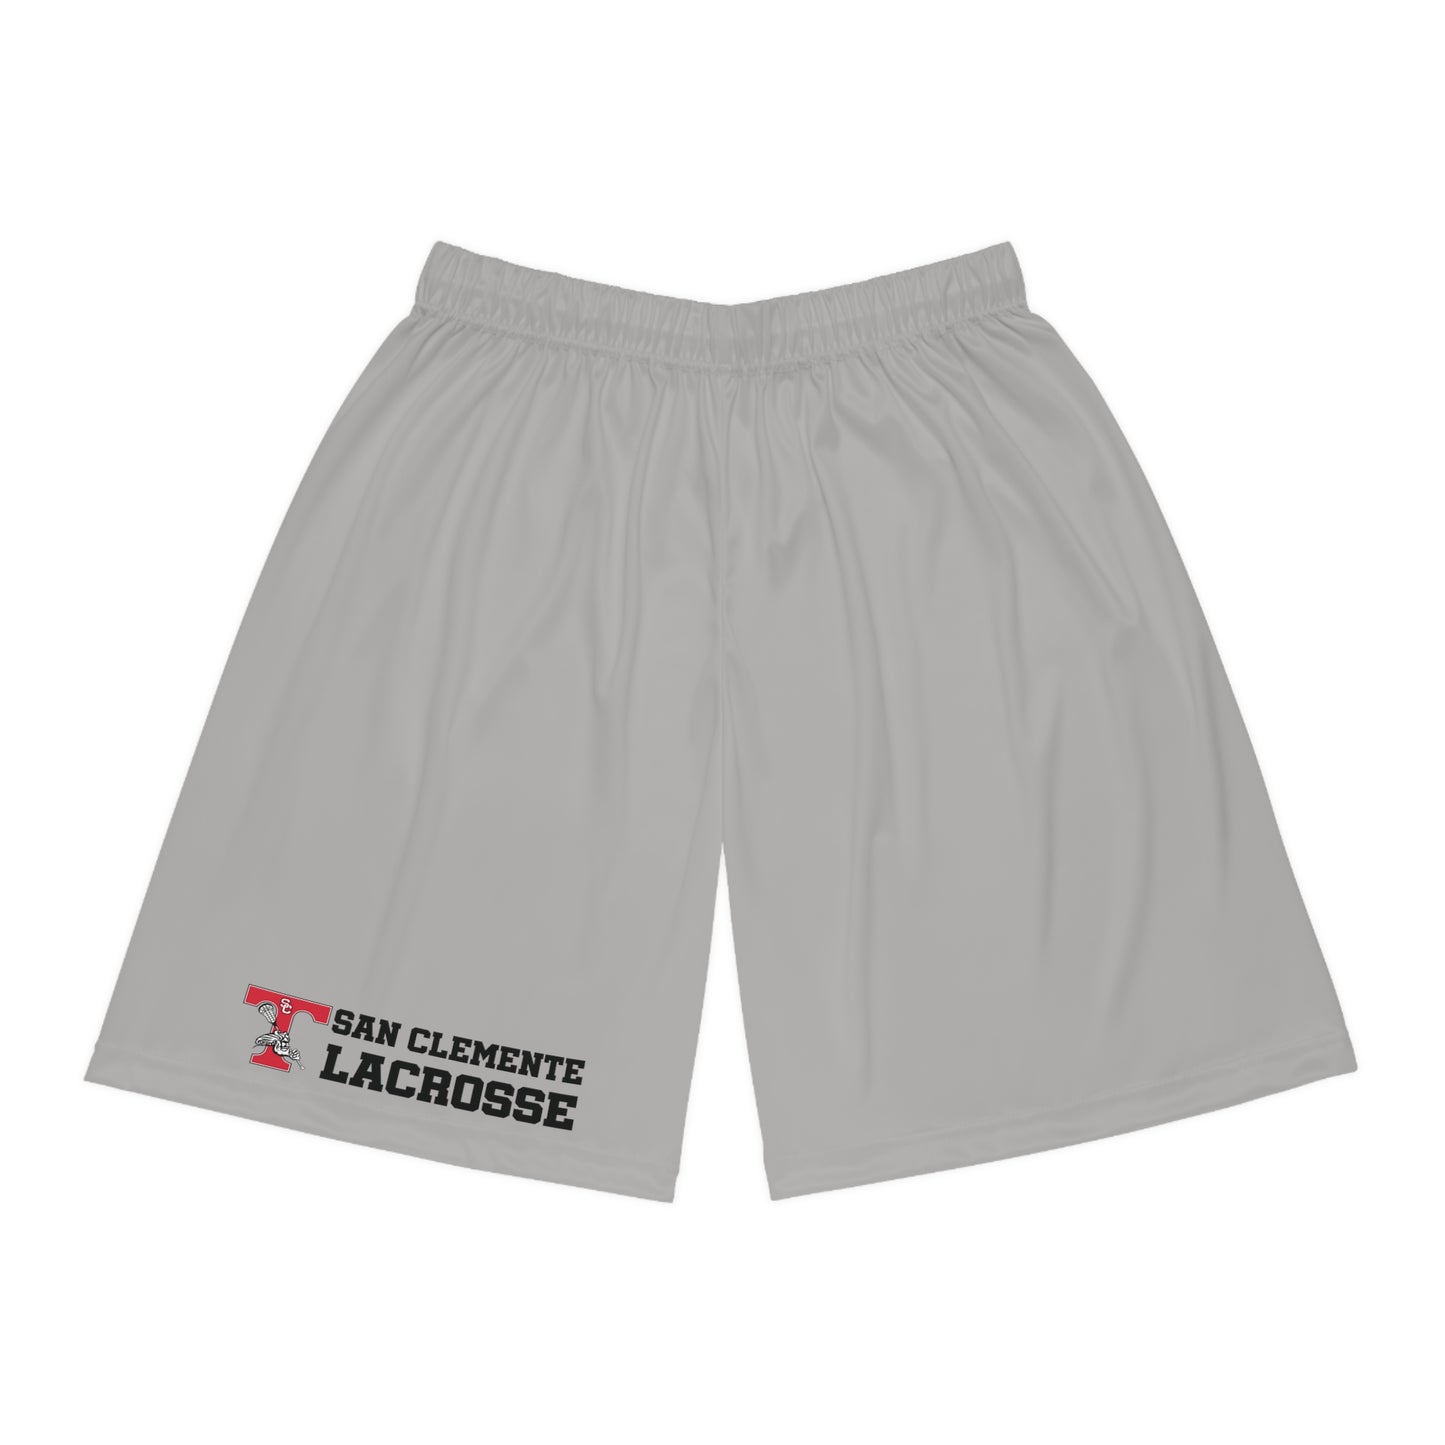 Triton Lacrosse Shorts